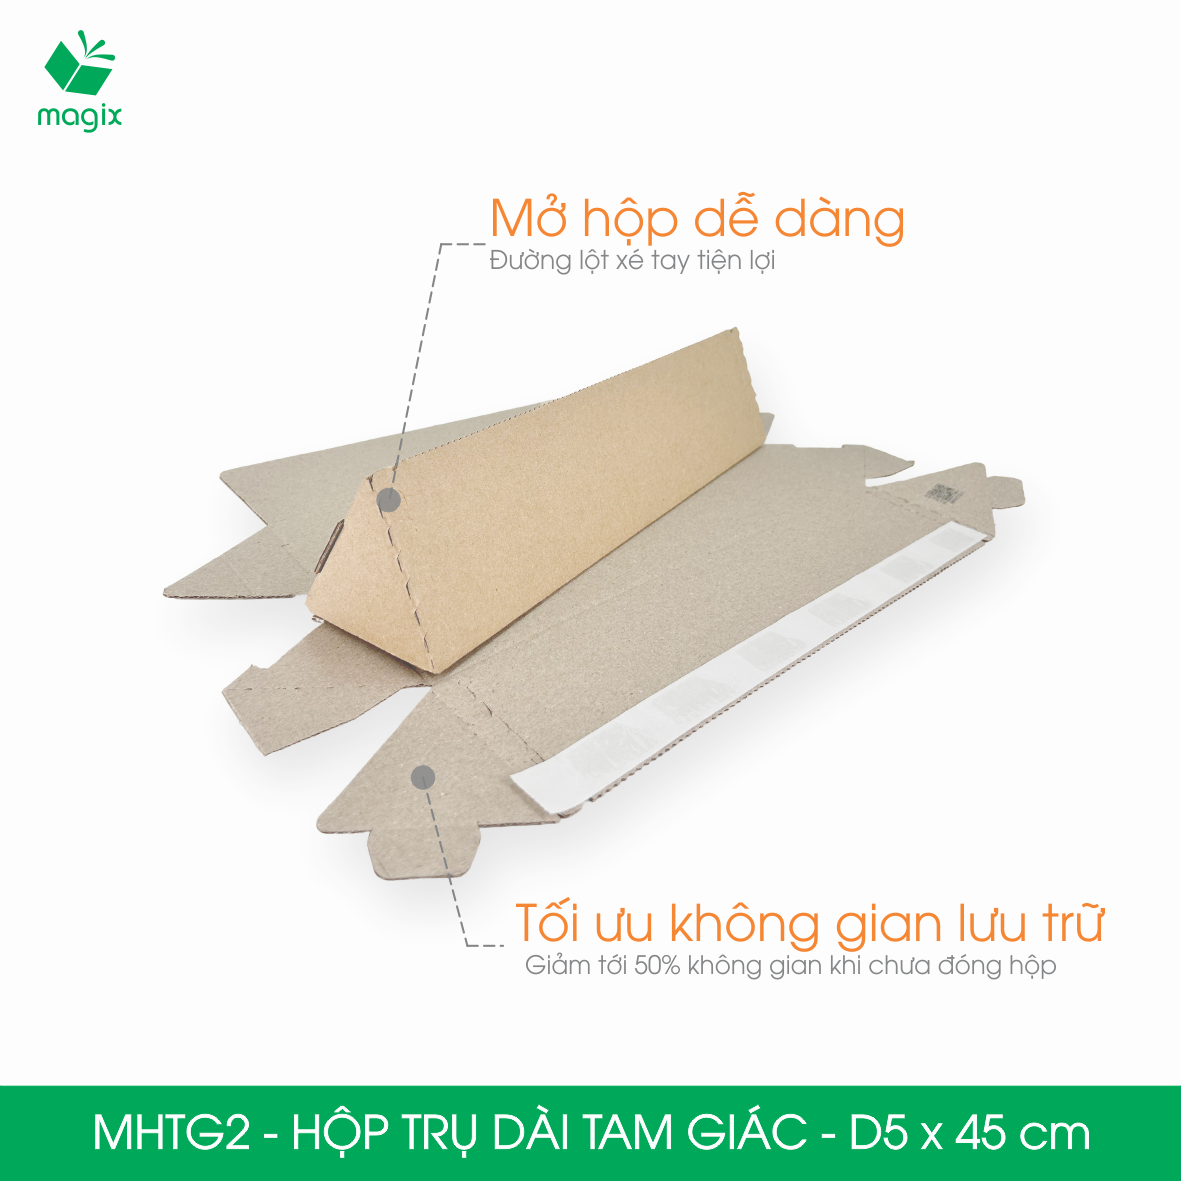 MHTG2 - D5x45 cm - 20 Hộp trụ dài tam giác thay thế ống giấy - Hộp carton đóng gói hàng